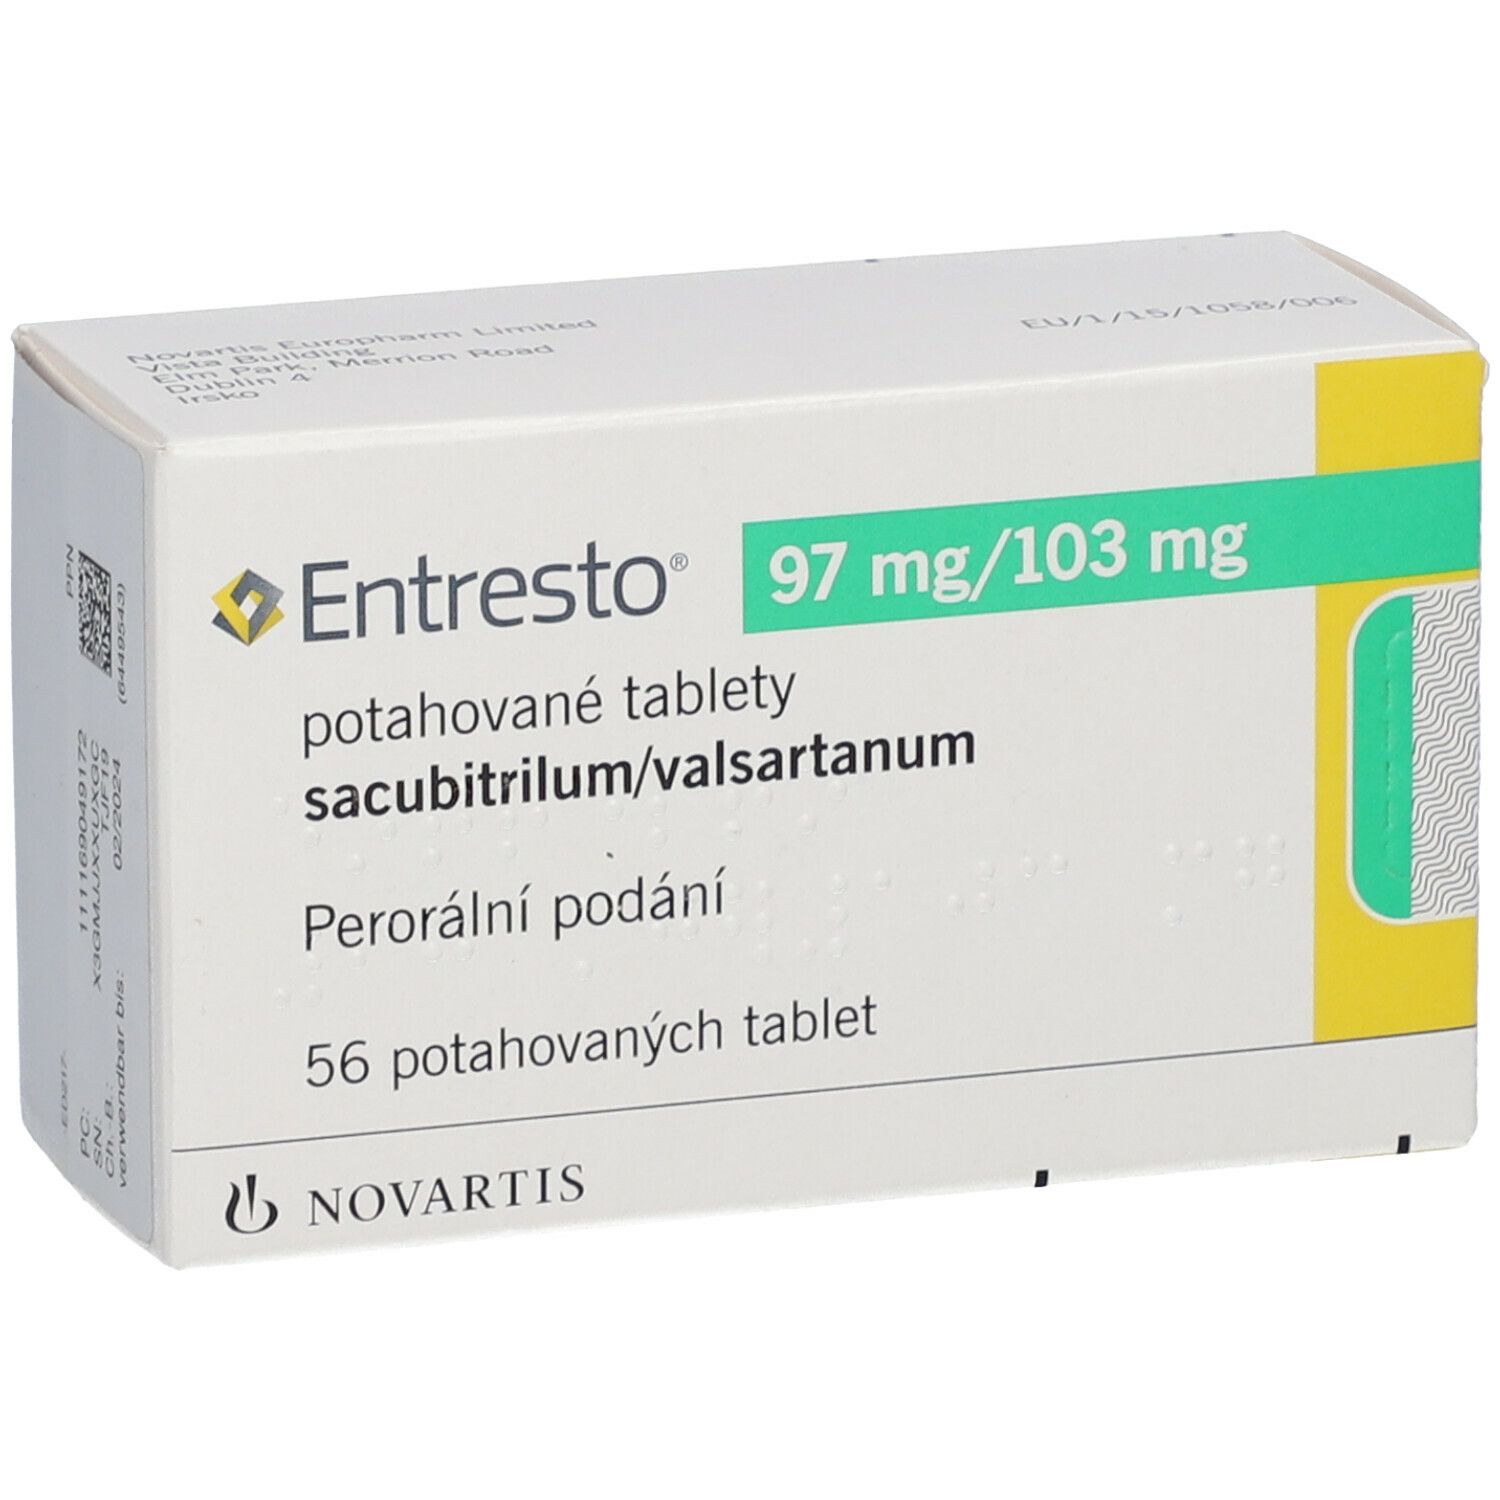 Entresto 97 mg/103 mg